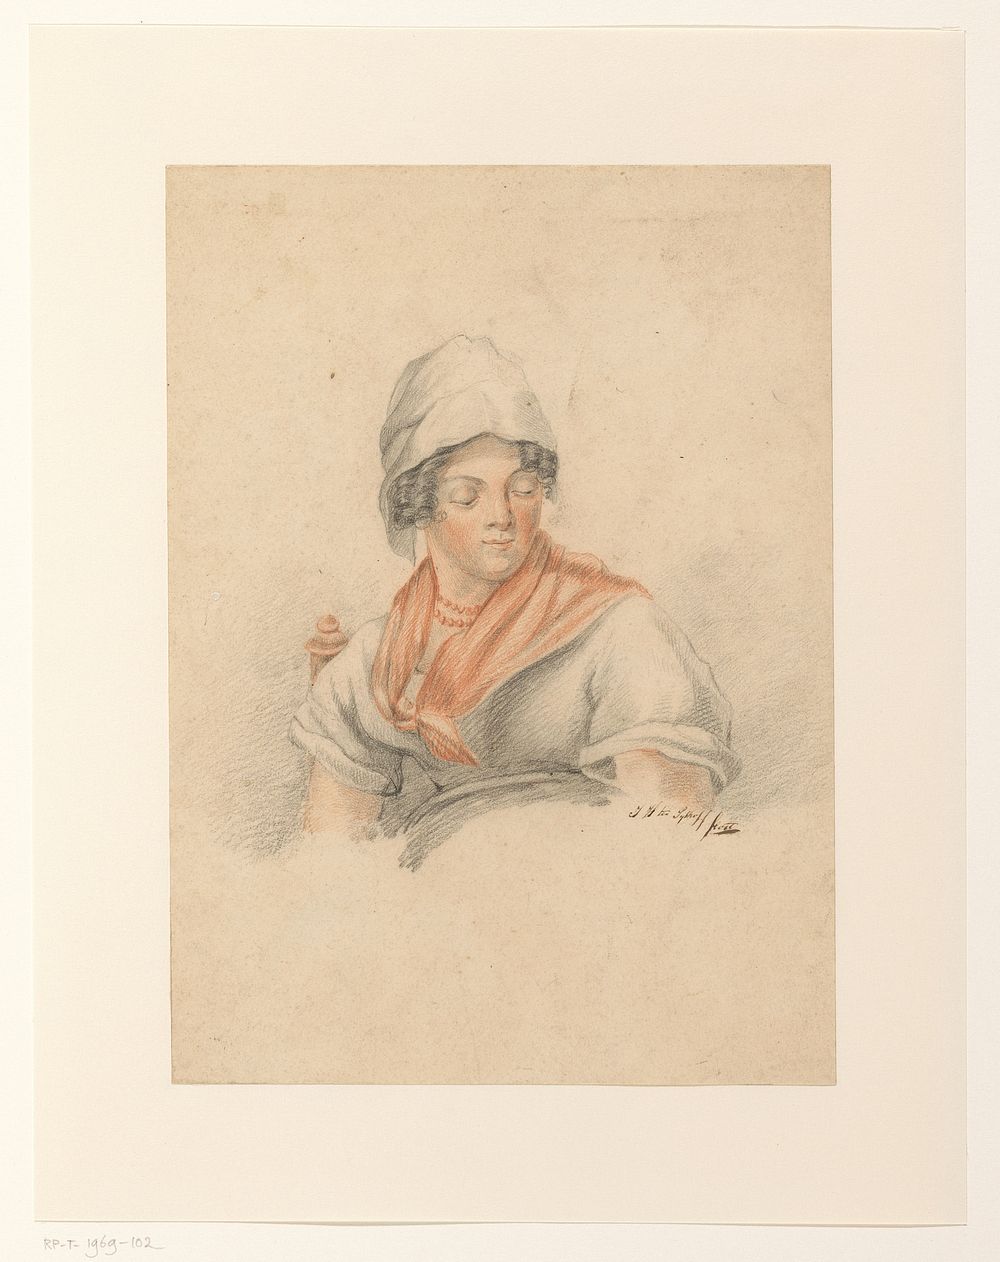 Boerenmeisje (c. 1800 - c. 1900) by J H ten Sijthoff